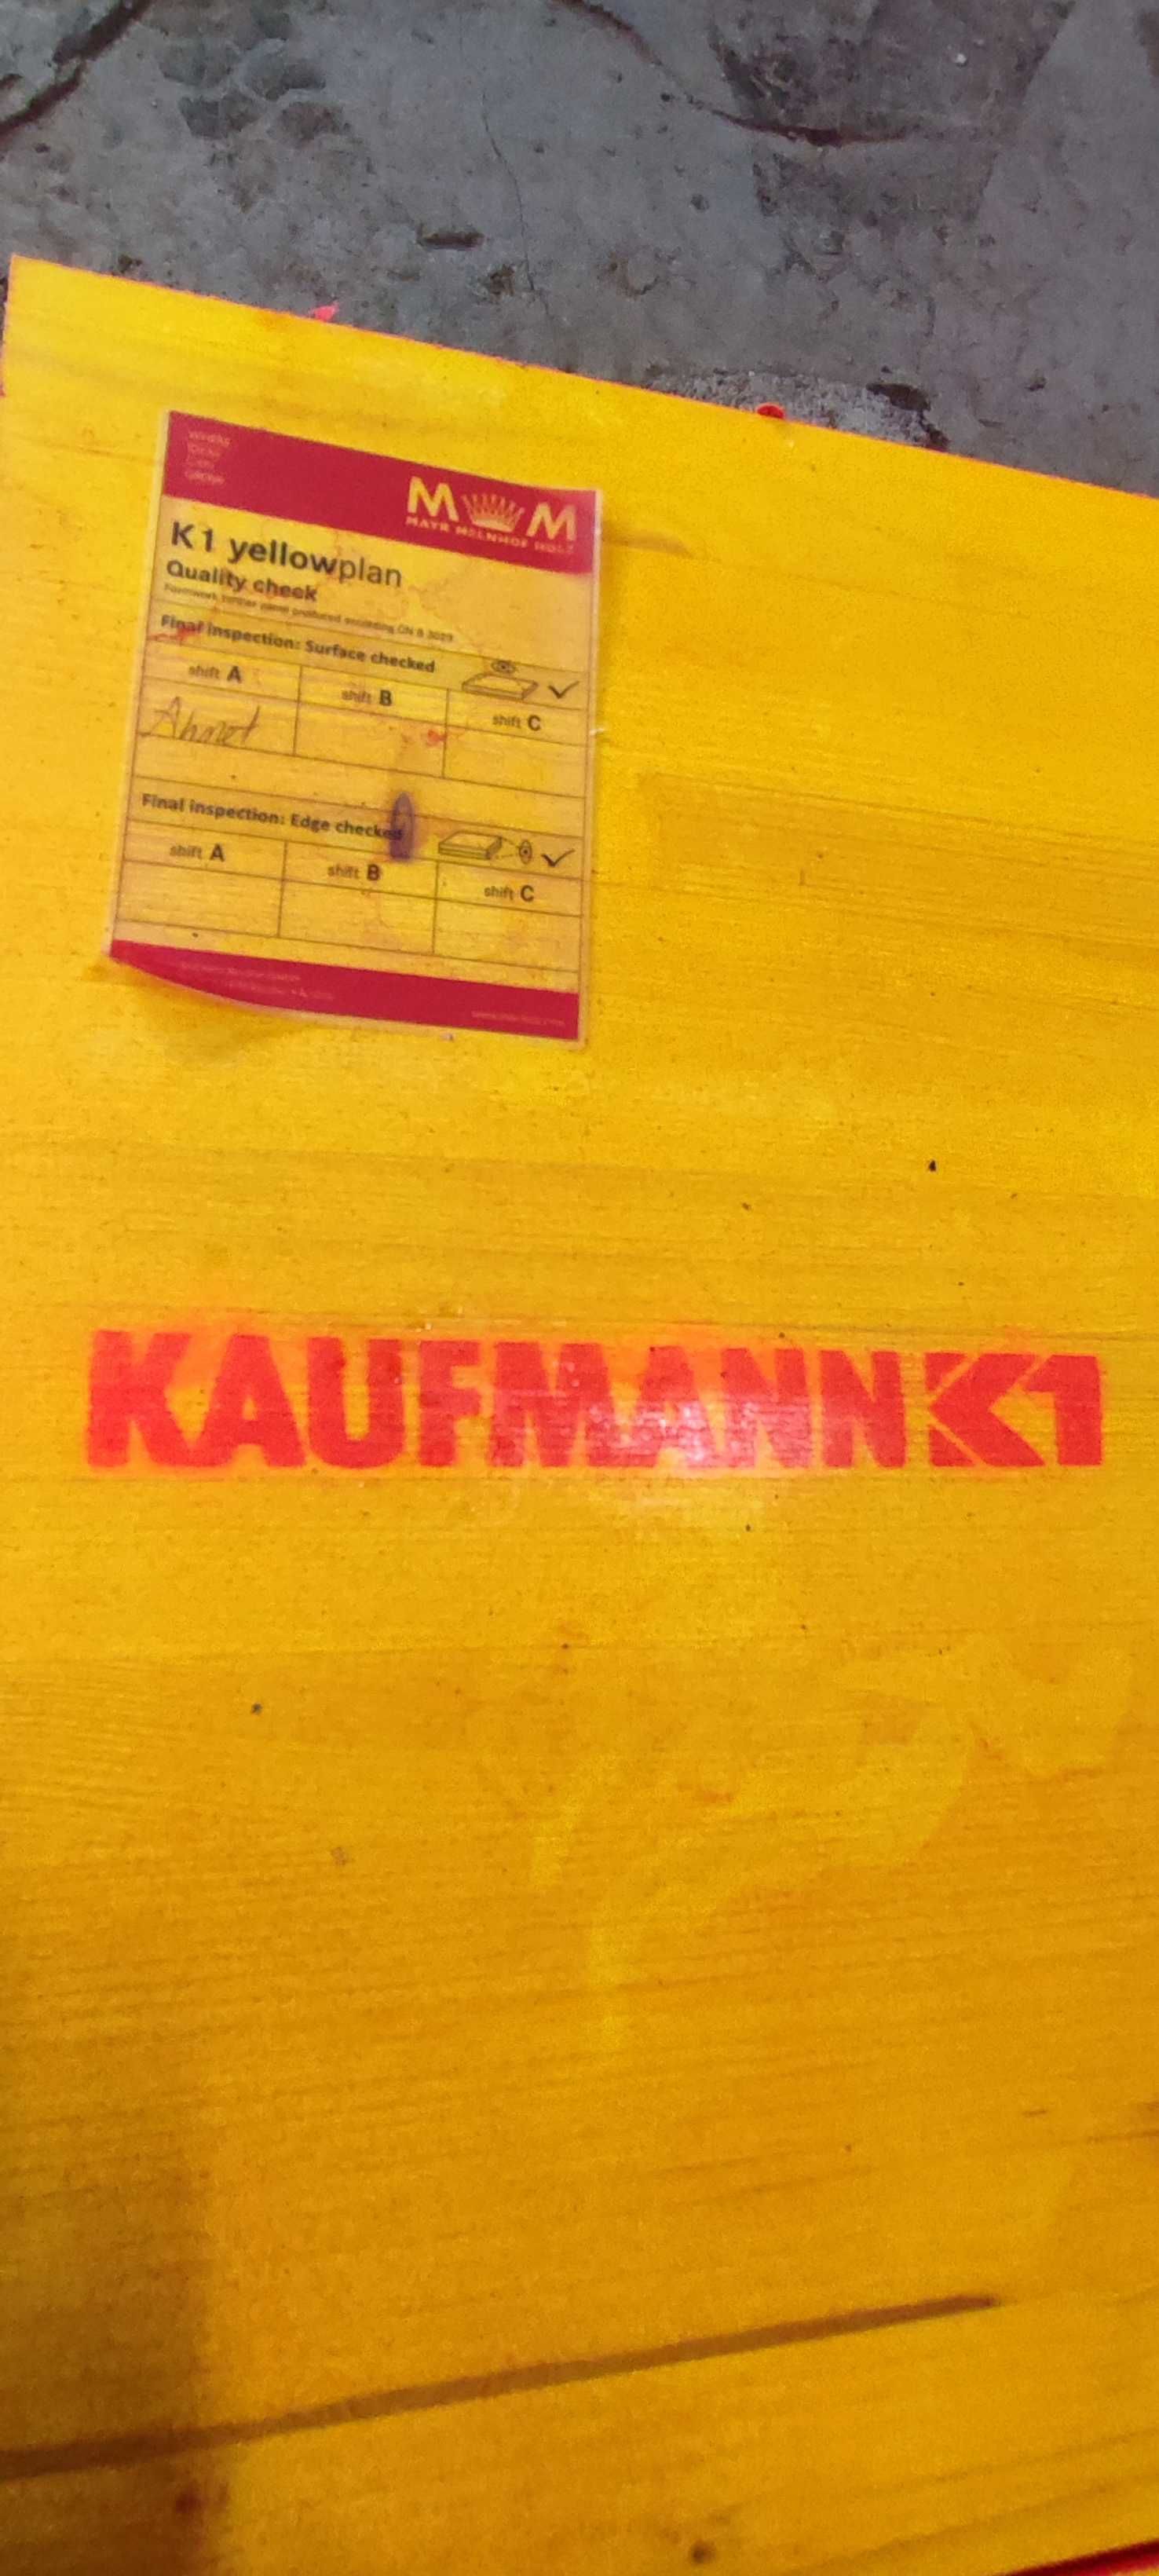 Numarul 1 in utilizare: Panourile Kaufmann K1